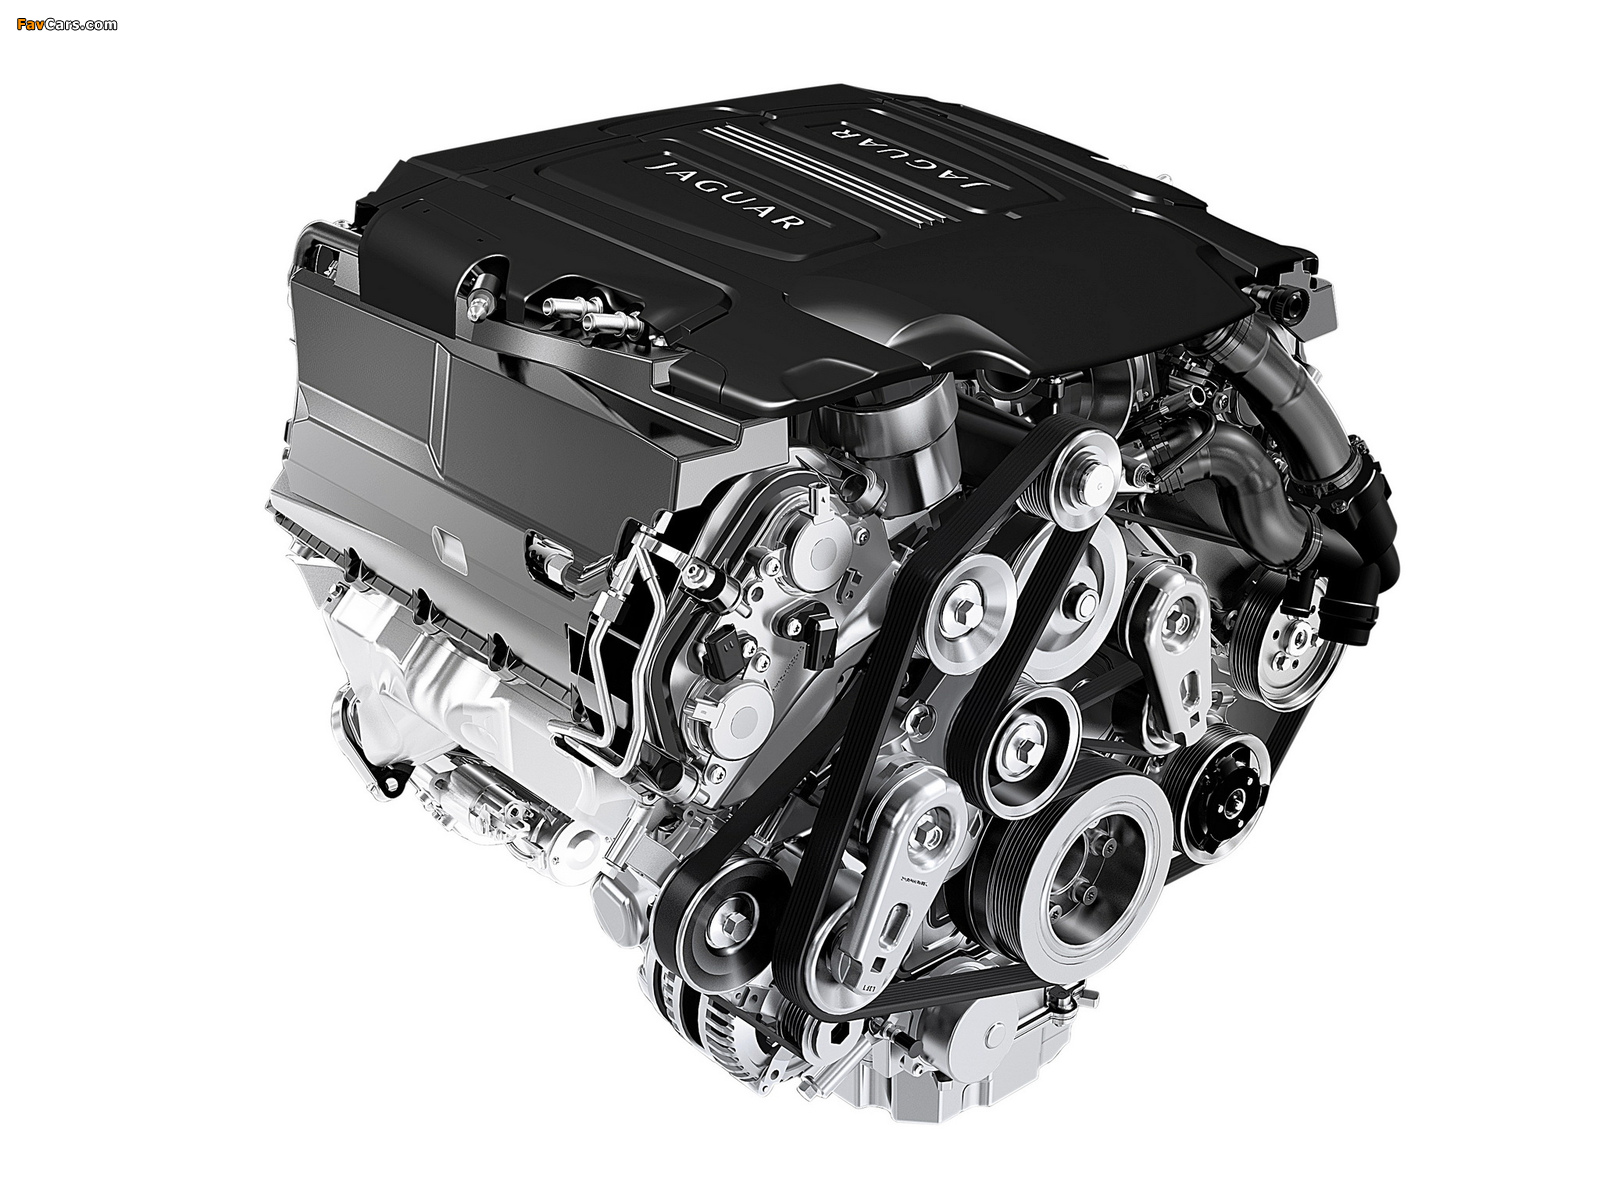 Images of Engines  Jaguar 5.0L V8 Supercharged (495 hp) (1600 x 1200)